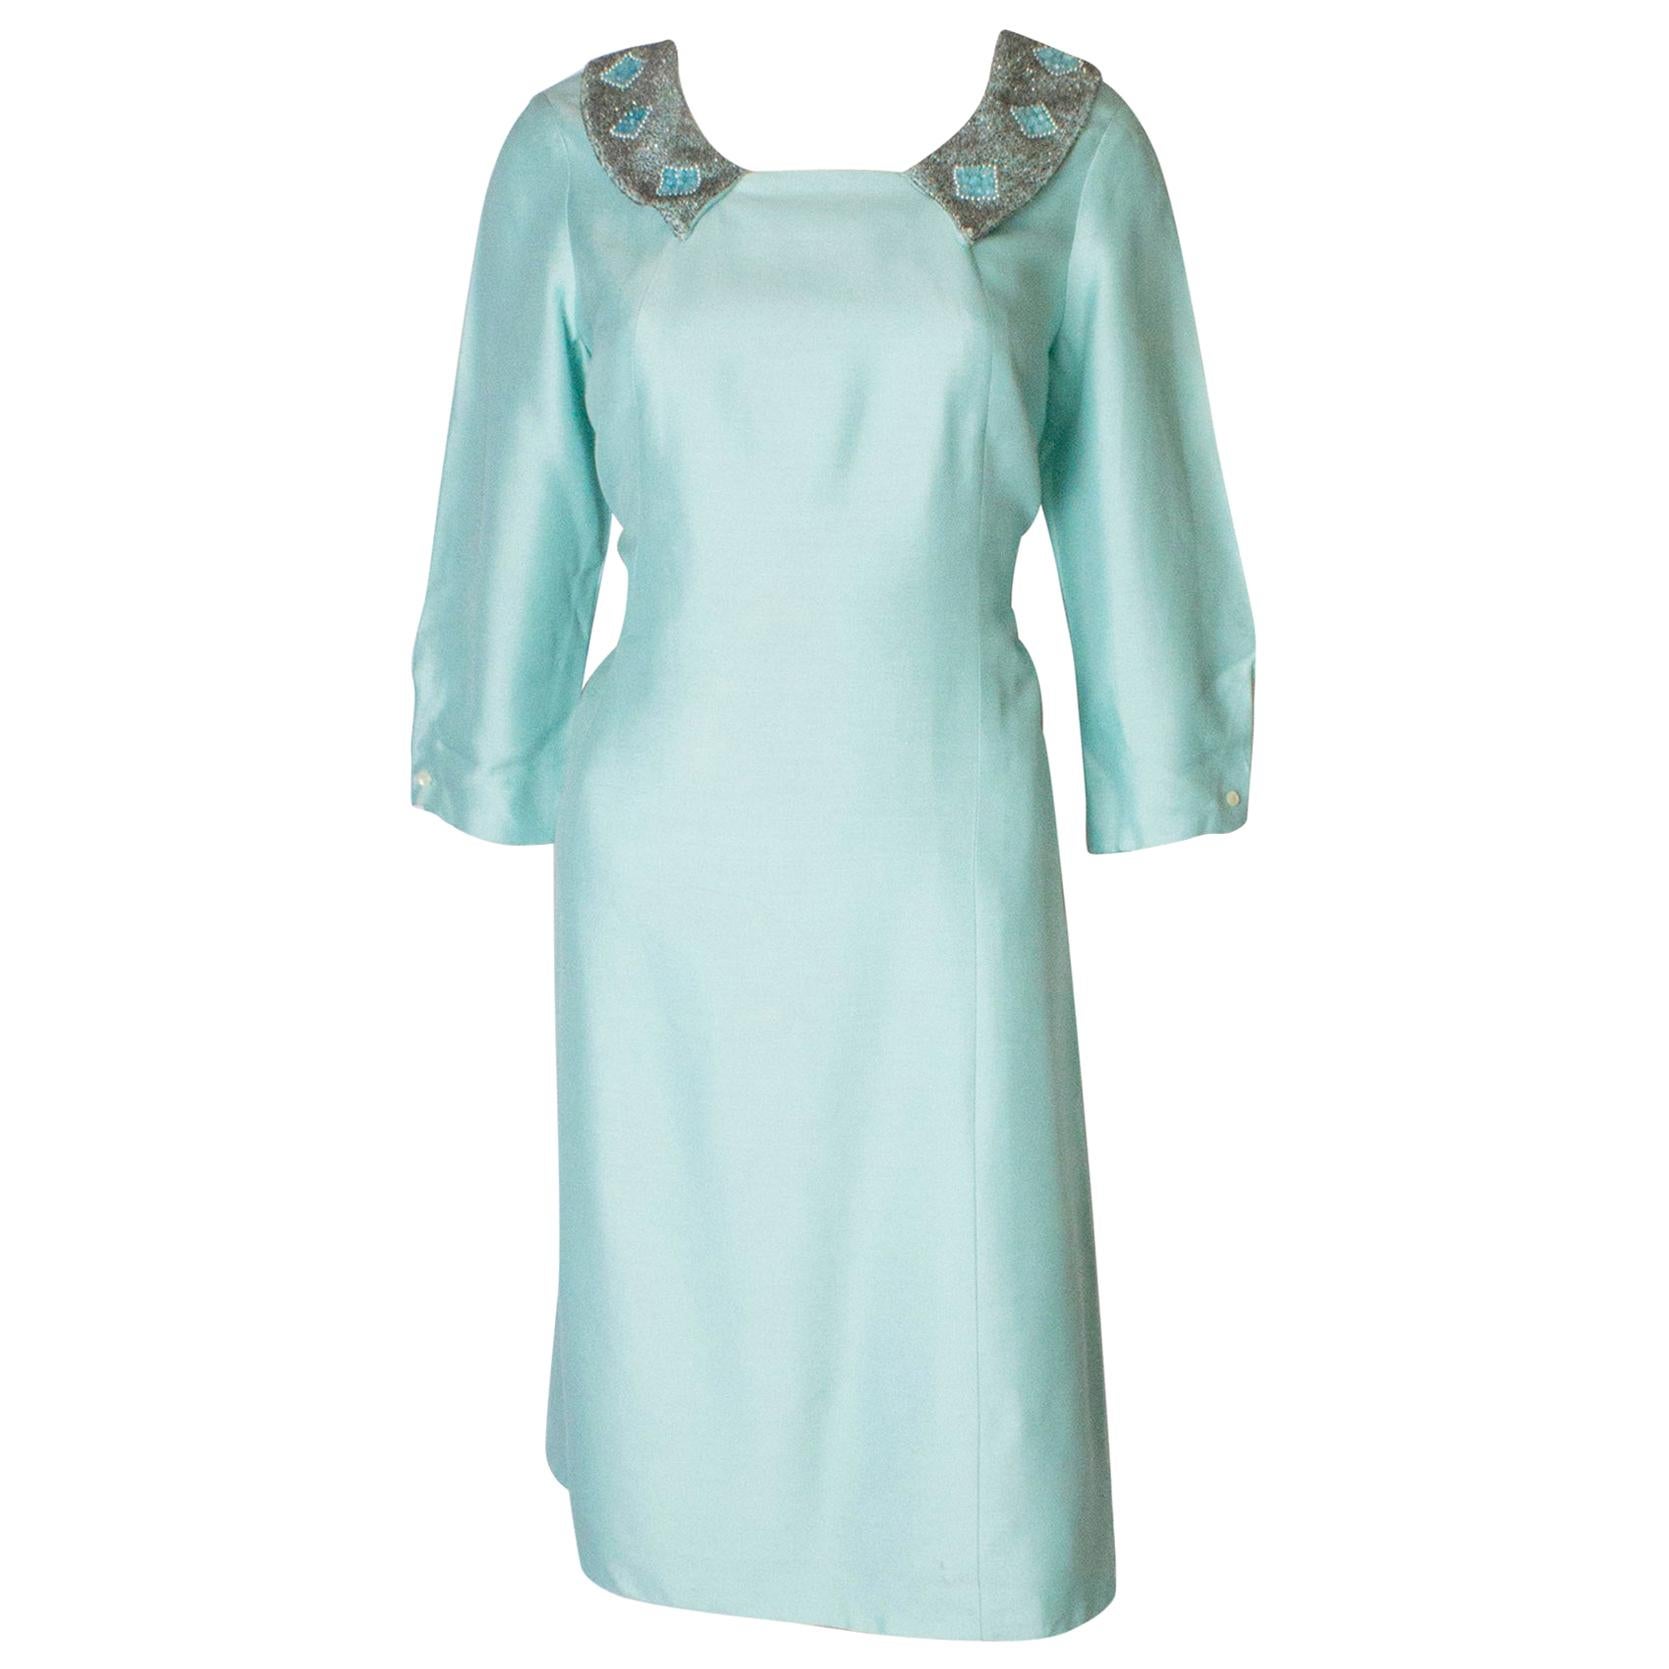 Pale Blue Vintage Dress by La Petite Francaise